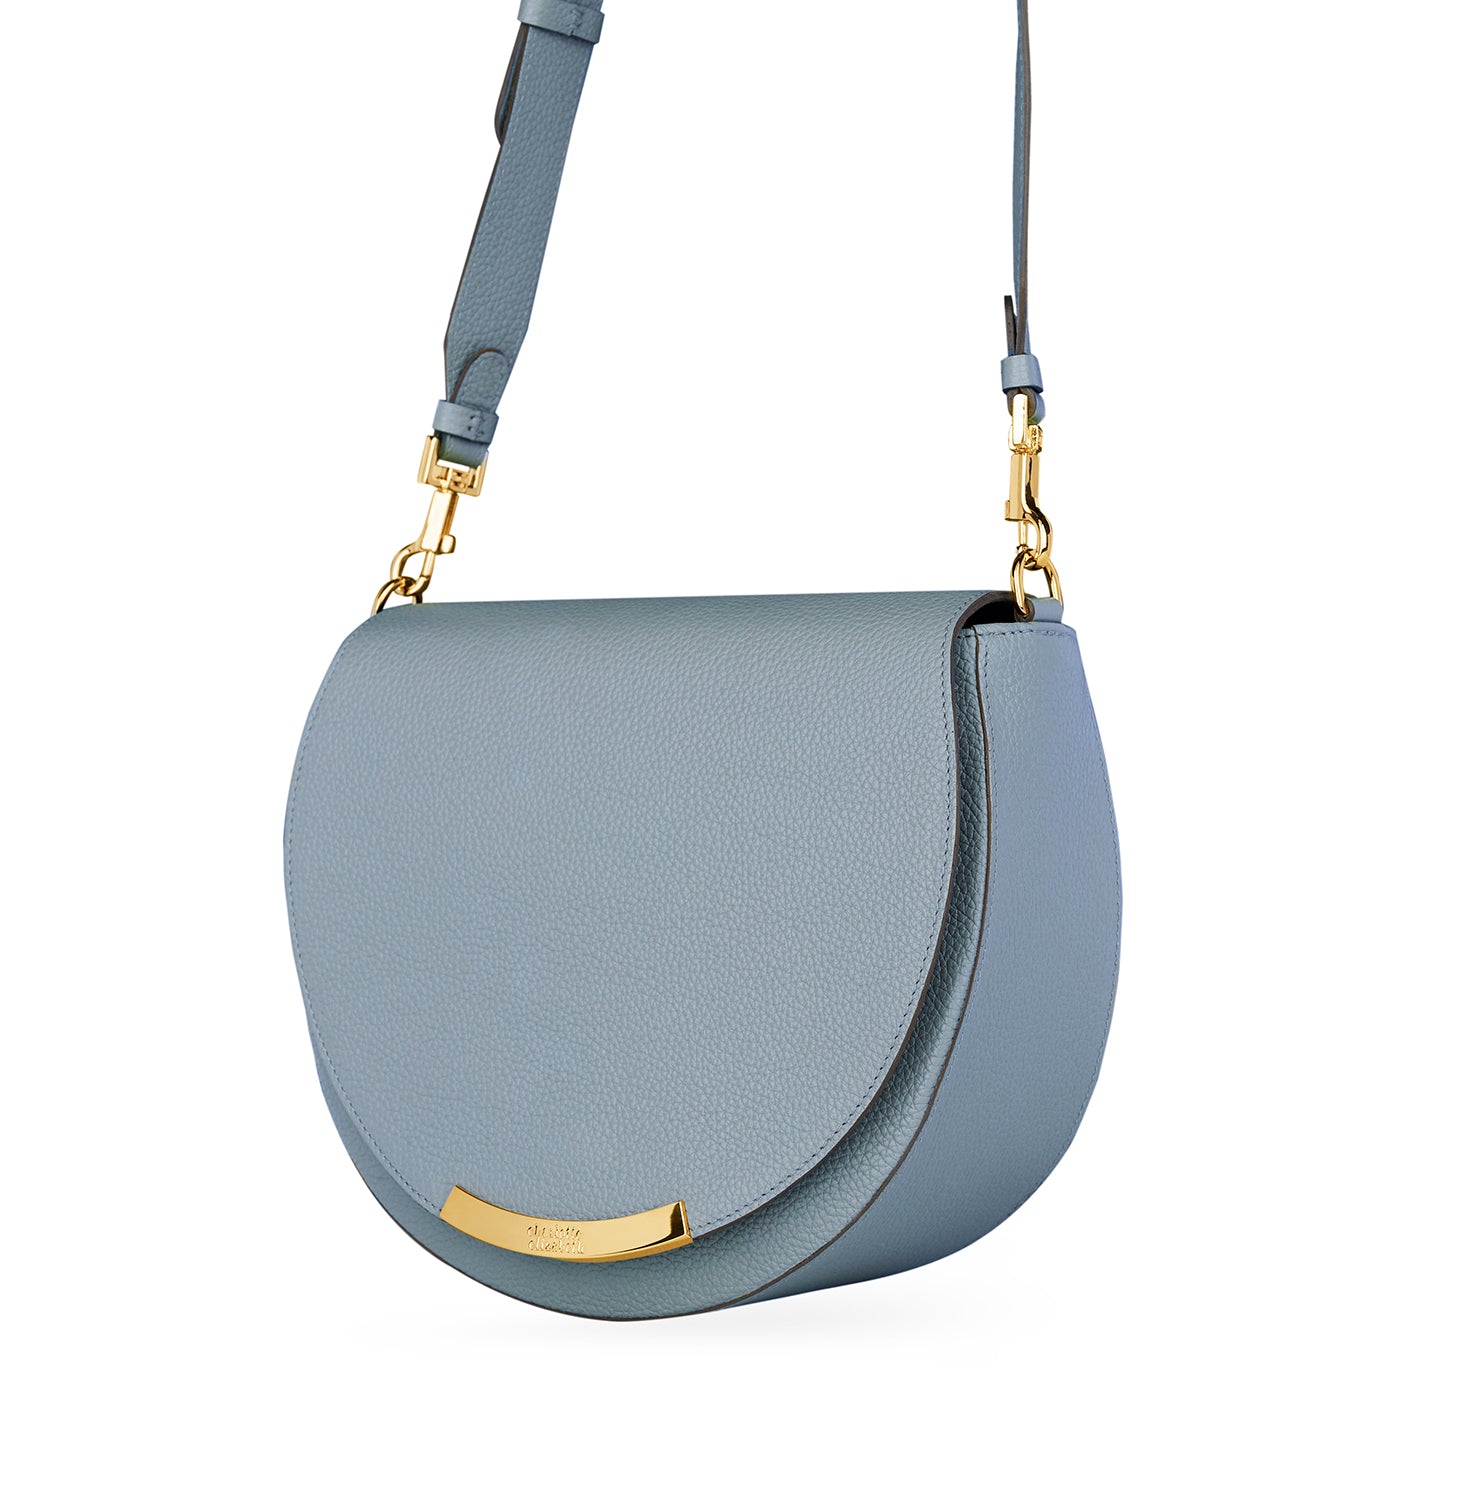 crossbody shoulder strap handbag with gold hardware blue